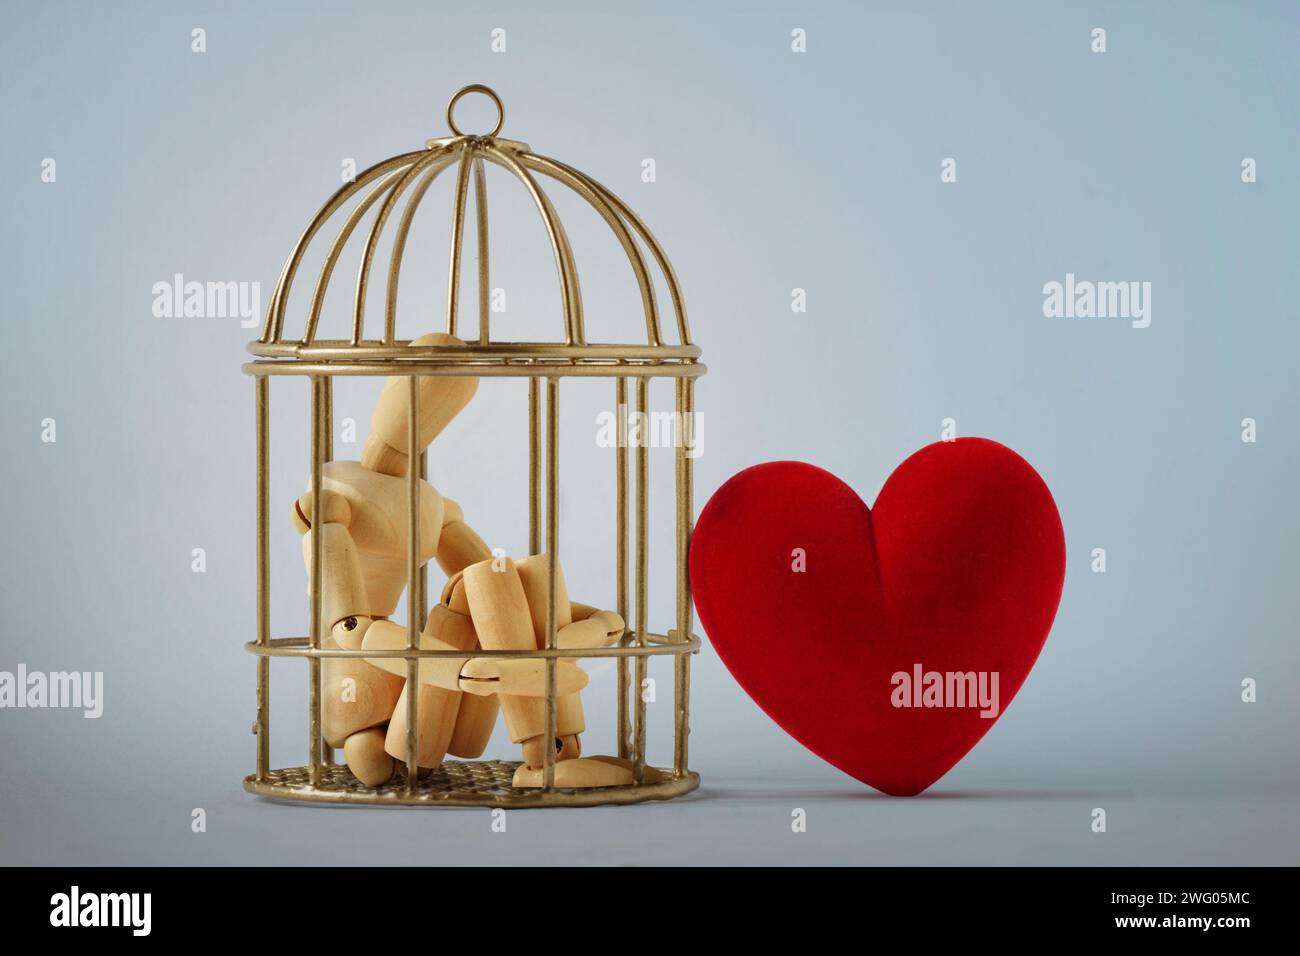 Maniquí de madera en una jaula de pájaro y corazón libre - Amor y concepto de libertad Foto de stock